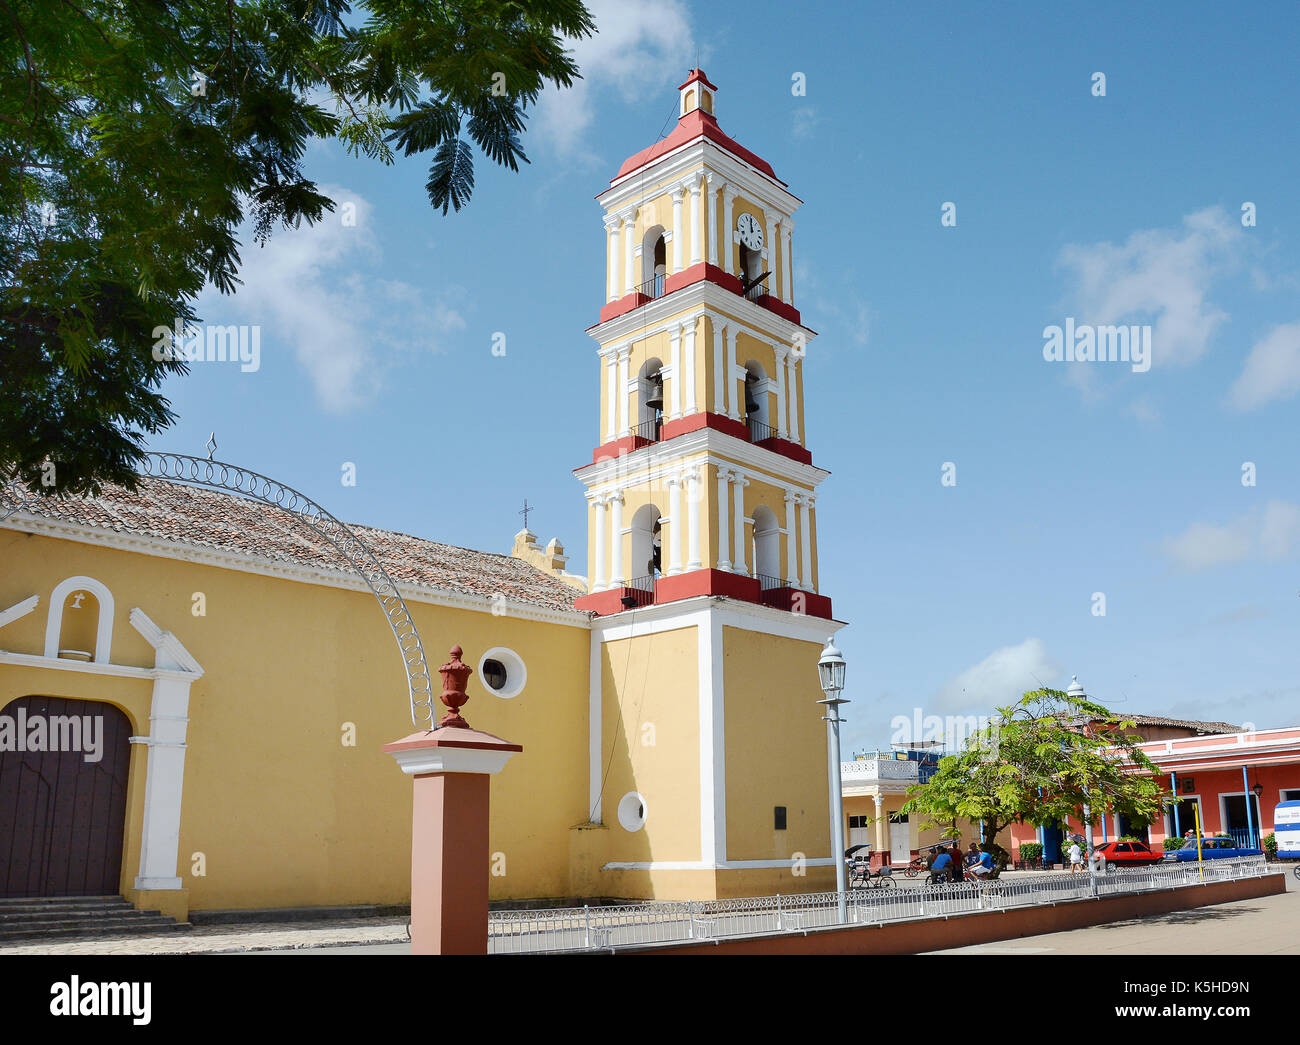 Remedios, Cuba - Luglio 27, 2016: Grande chiesa parrocchiale di San Juan Bautista in isabel ii plaza. La chiesa ospita 13 allestita altari. Foto Stock